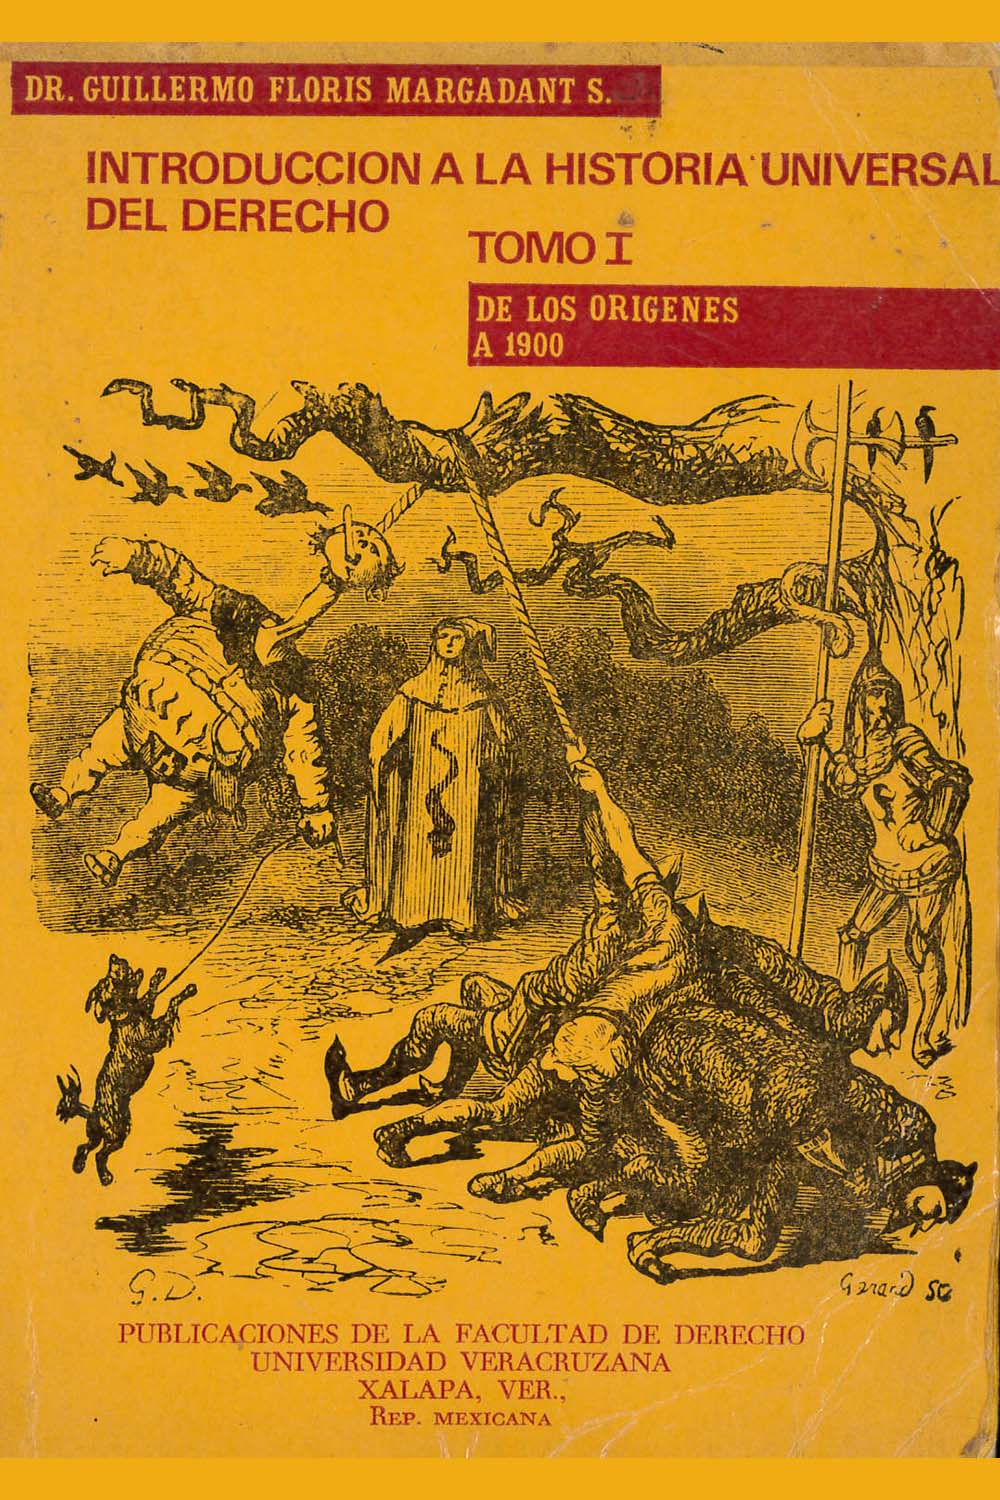 8 / 16 - K154 M37 v.1 Introducción a la Historia Universal del Derecho
Guillermo Floris Margadant - Universidad Veracruzana, México 1974